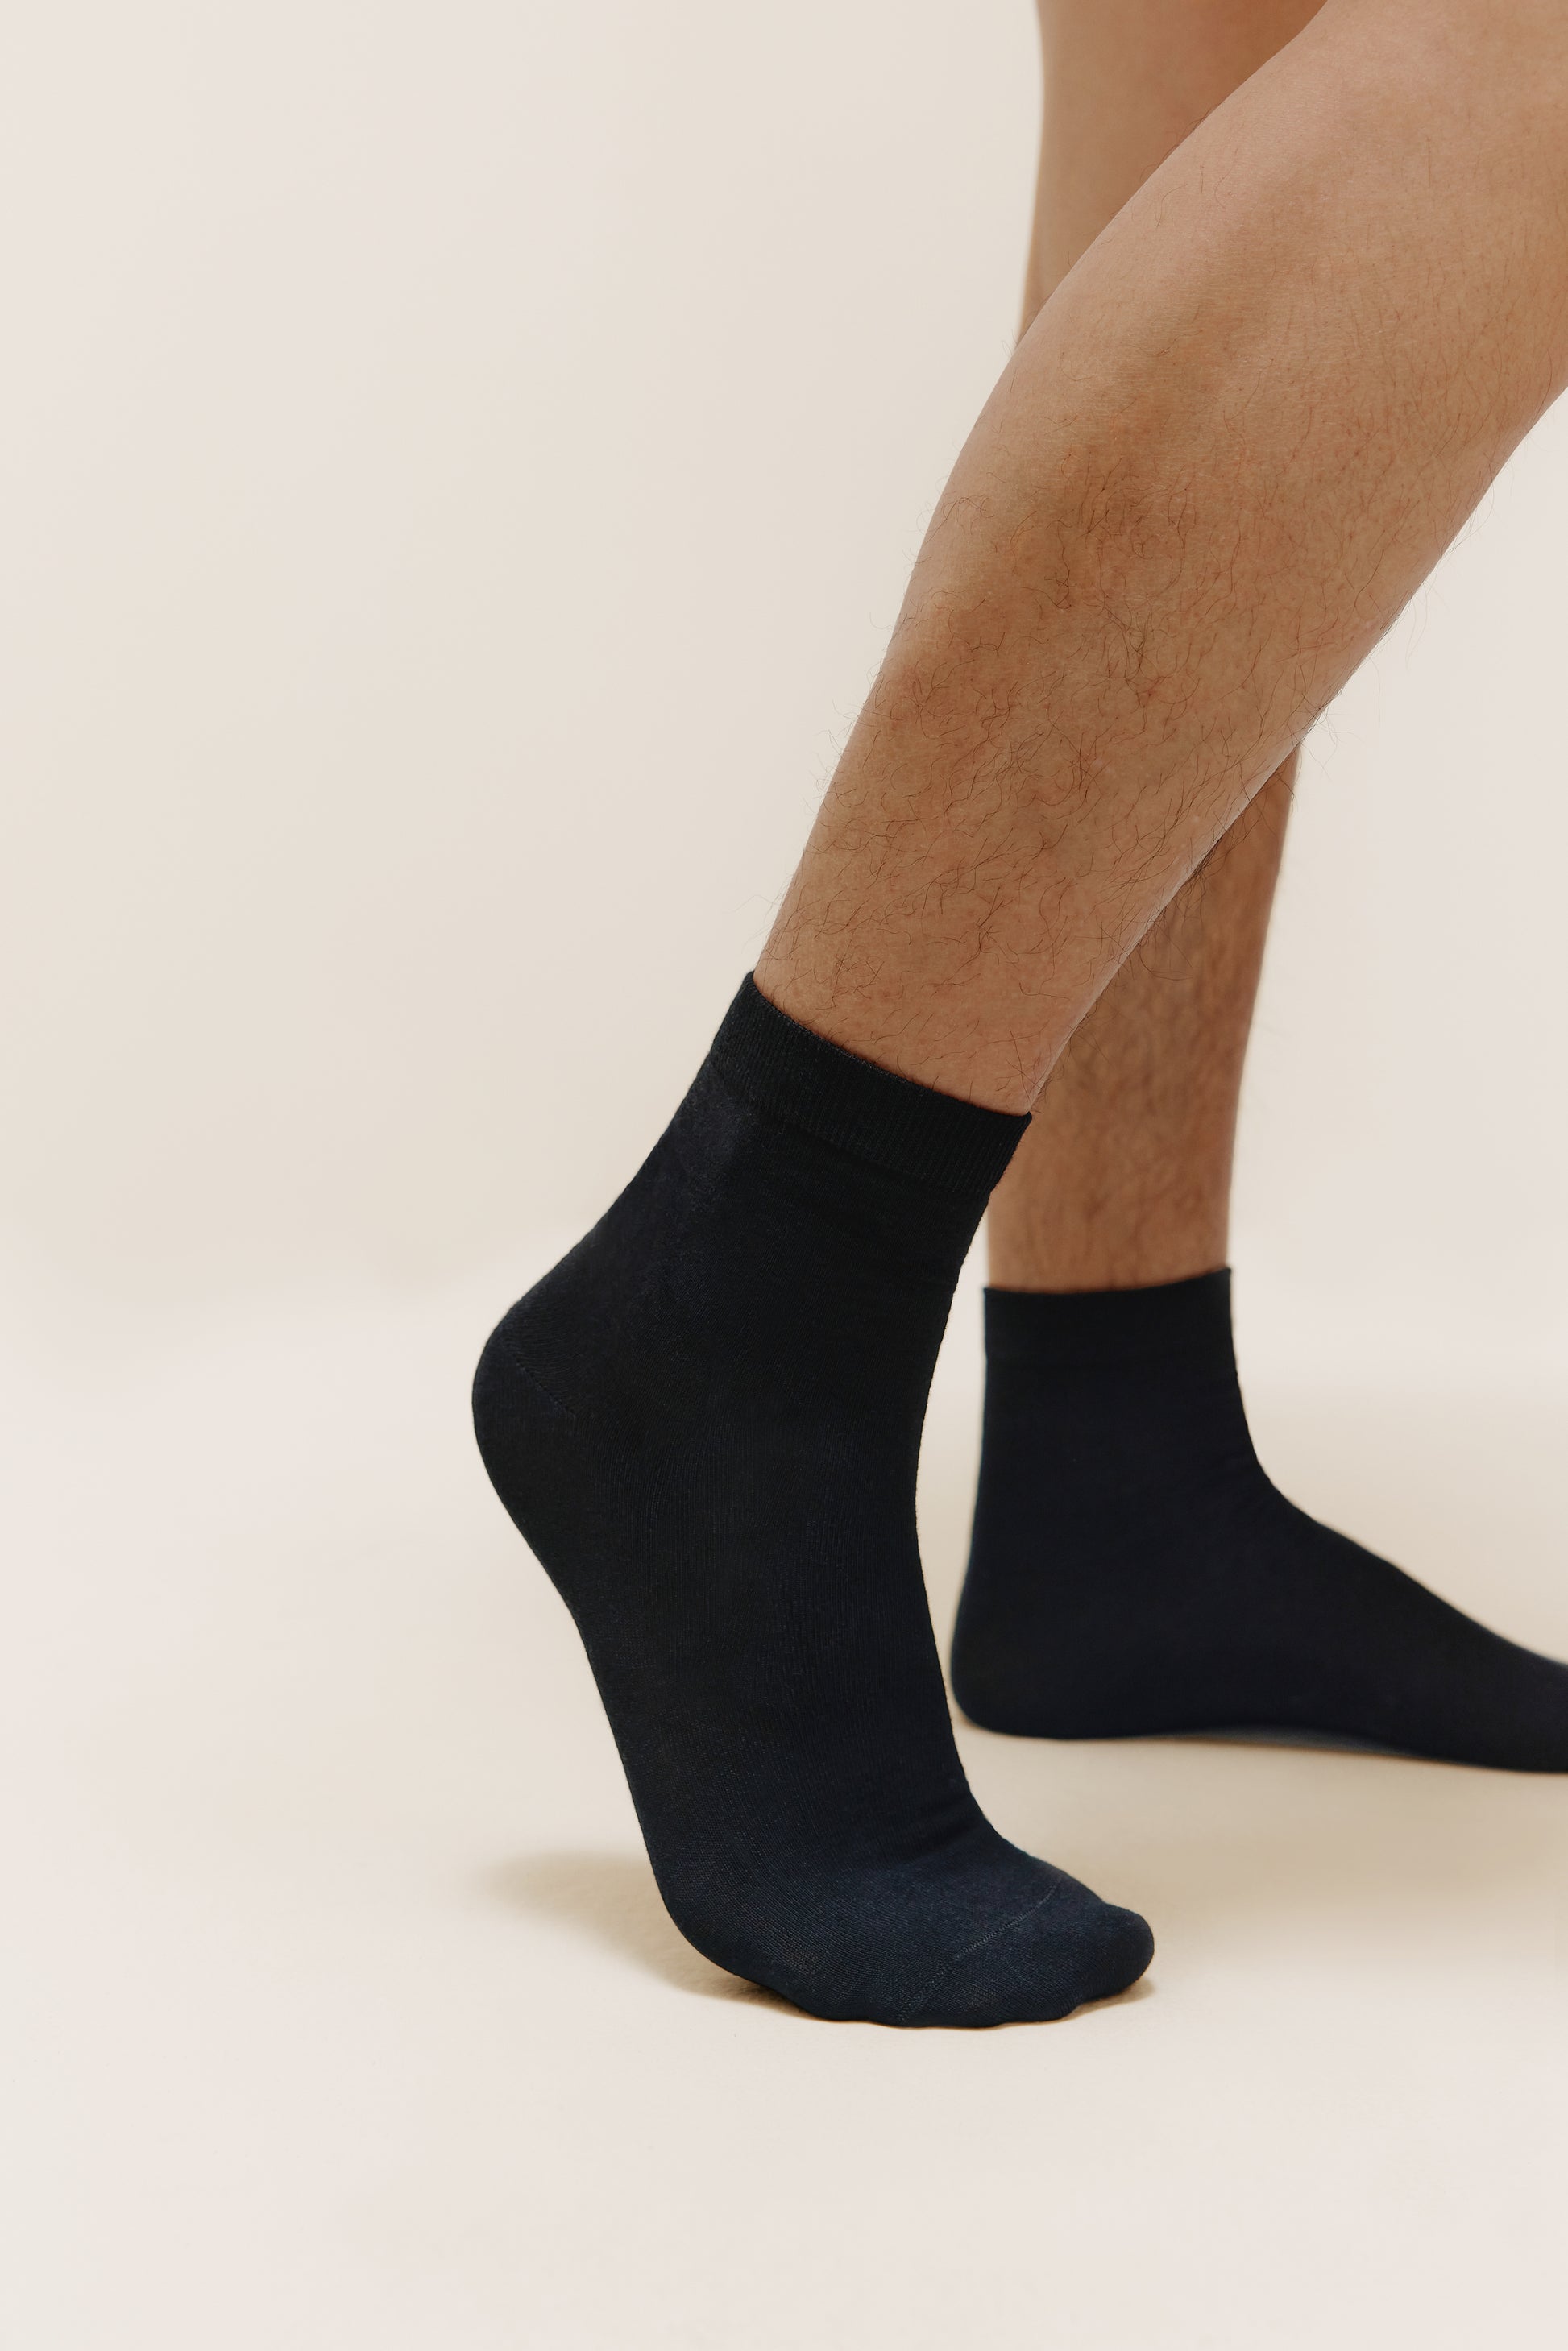 Calf Length Socks: Buy Mid Calf Length Socks for Men Online at Best Price